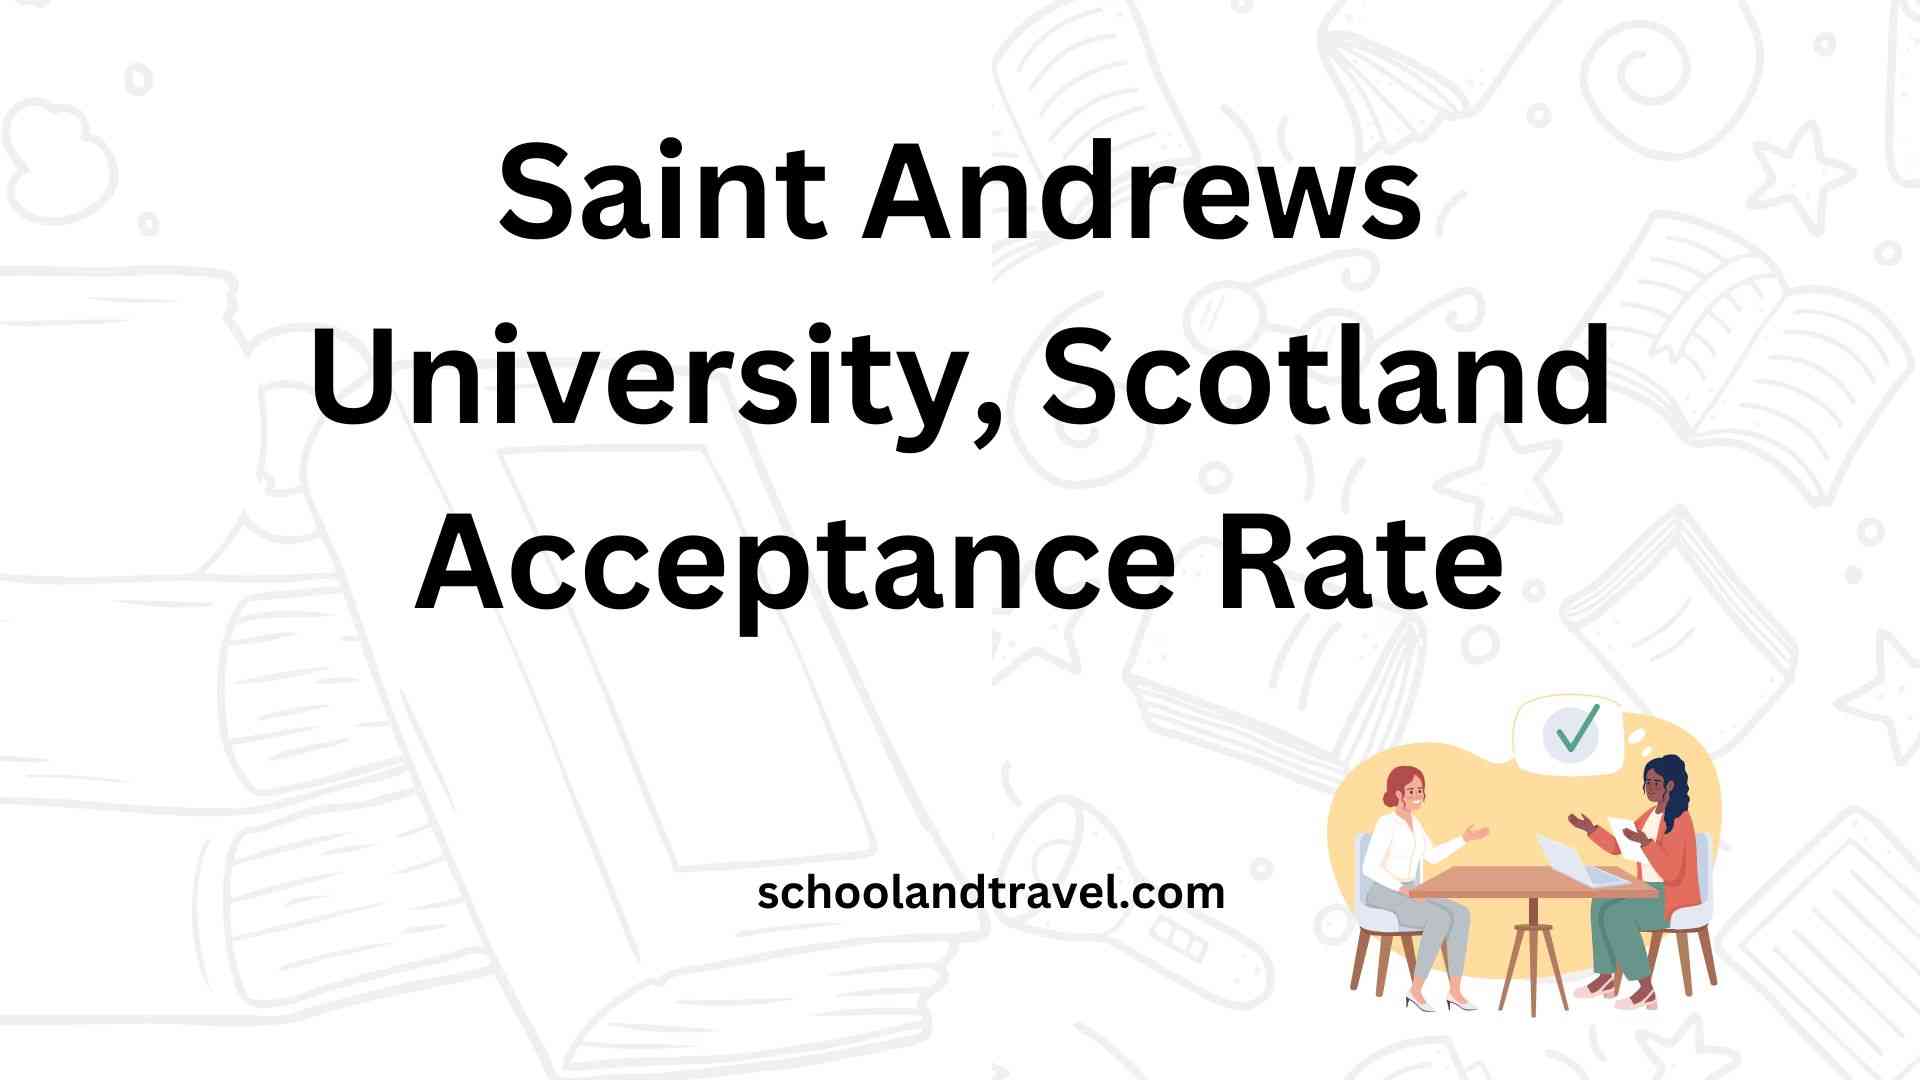 Saint Andrews University, Scotland Acceptance Rate